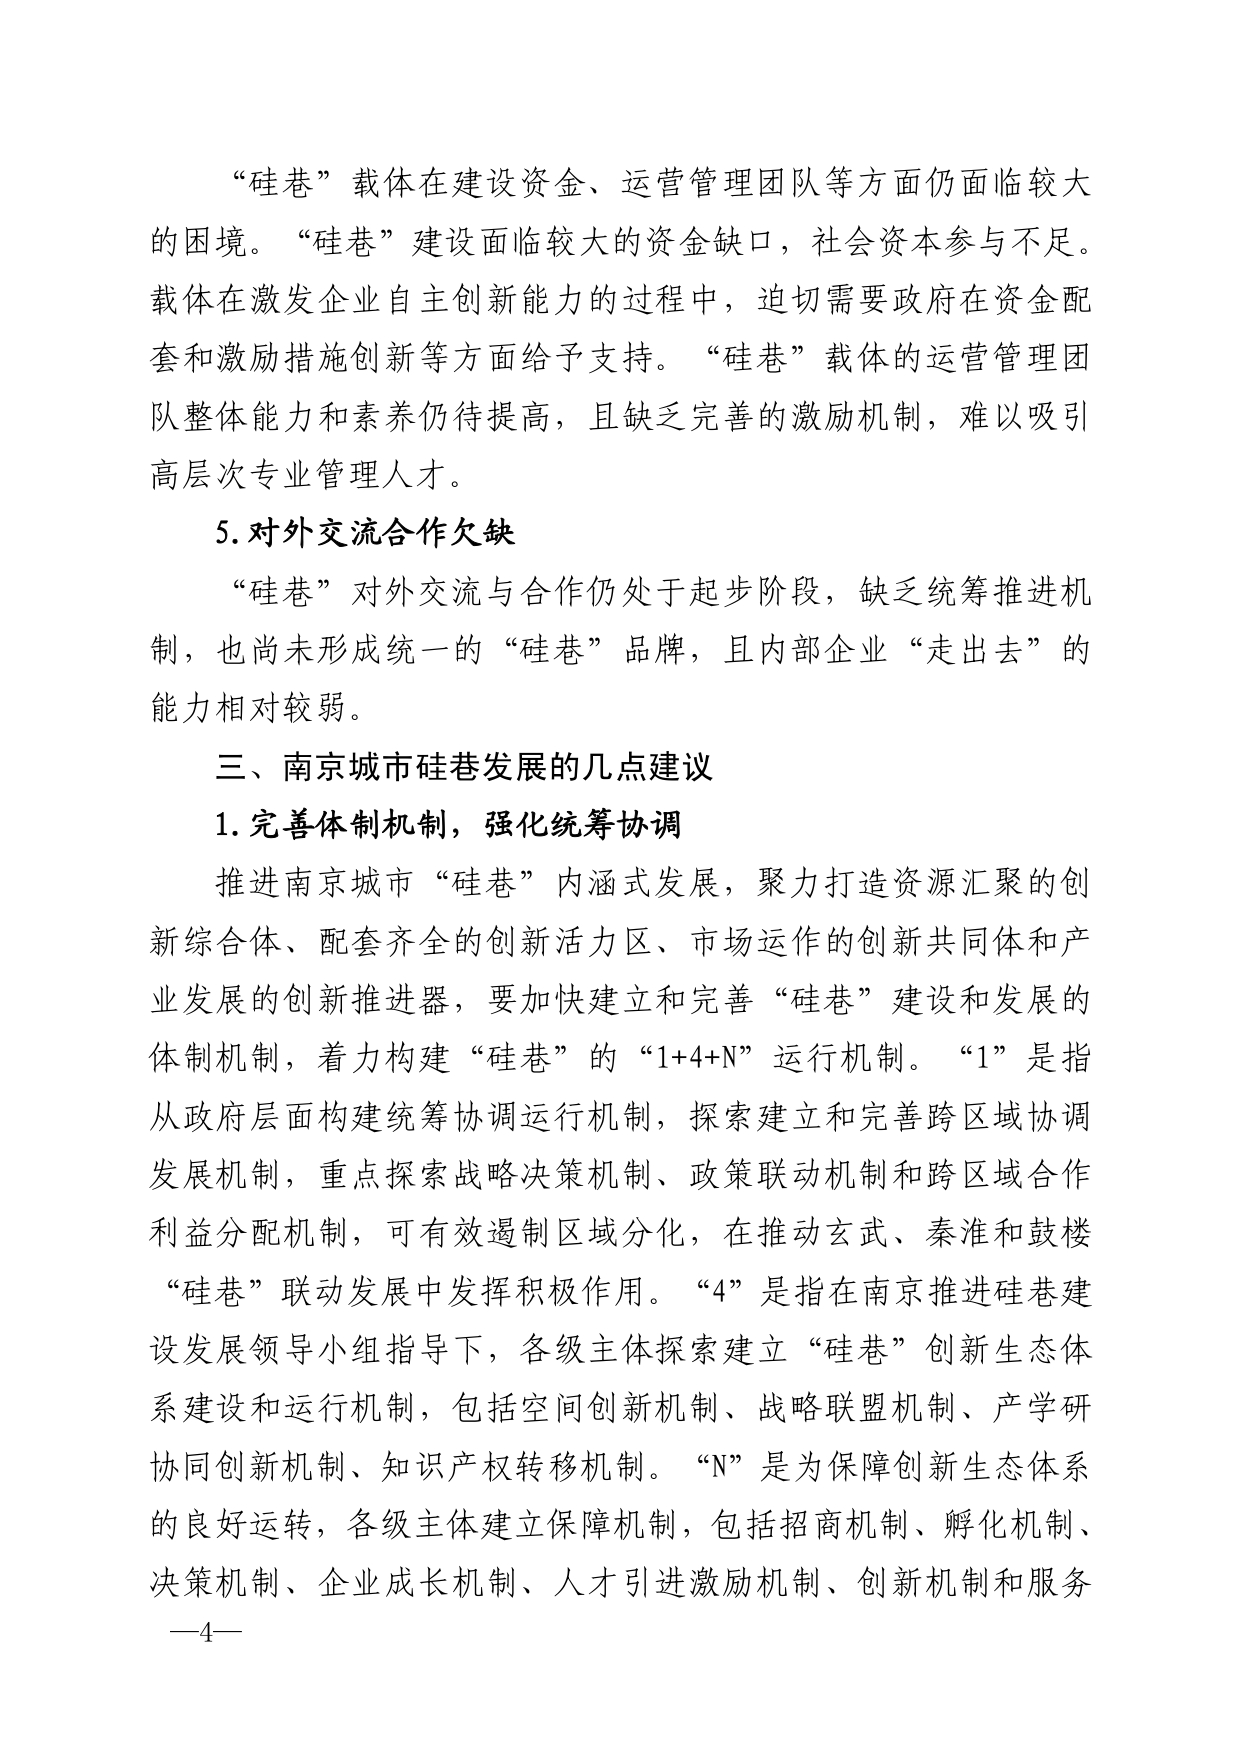 2021年第6期（关于南京城市硅巷发展的若干建议）-印刷版_page-0004.jpg